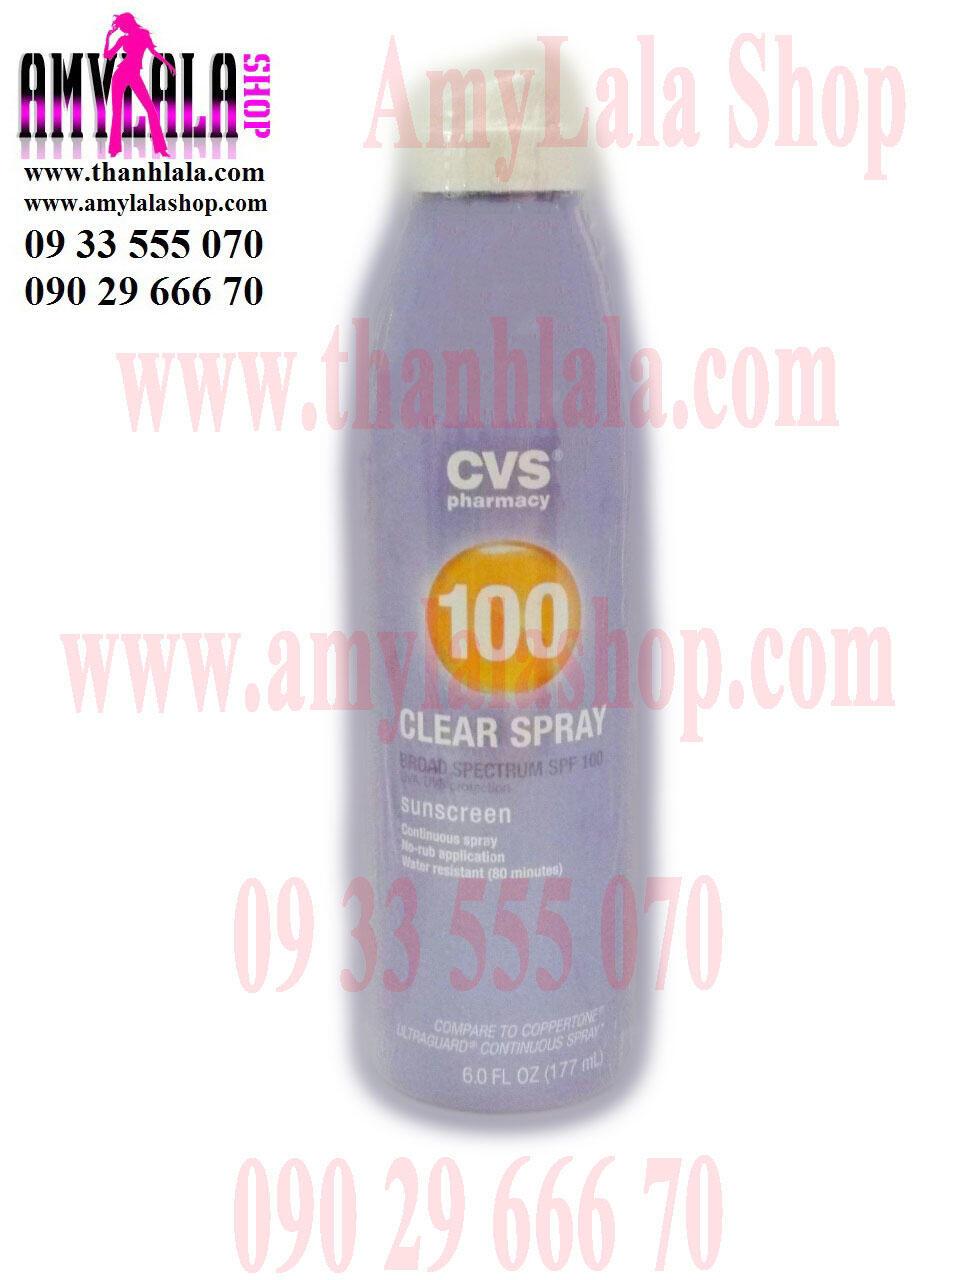 Xịt chống nắng làm sáng da CVS Clear Spray Sunscreen SPF100 177ml - 0933555070 - 0902966670